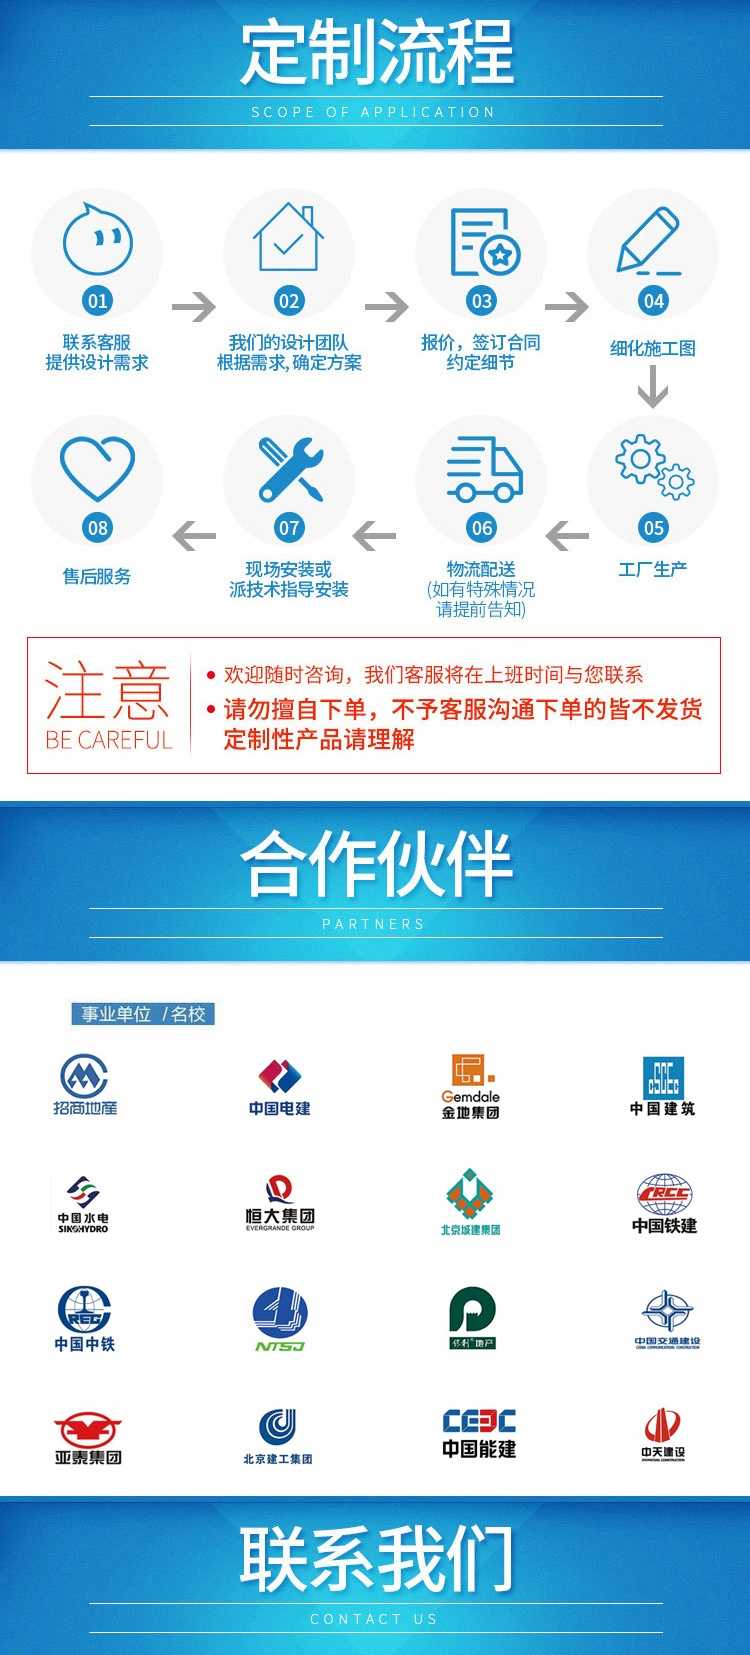 天津法利莱集装箱移动板房租赁有限公司提供住宅(图)(图5)